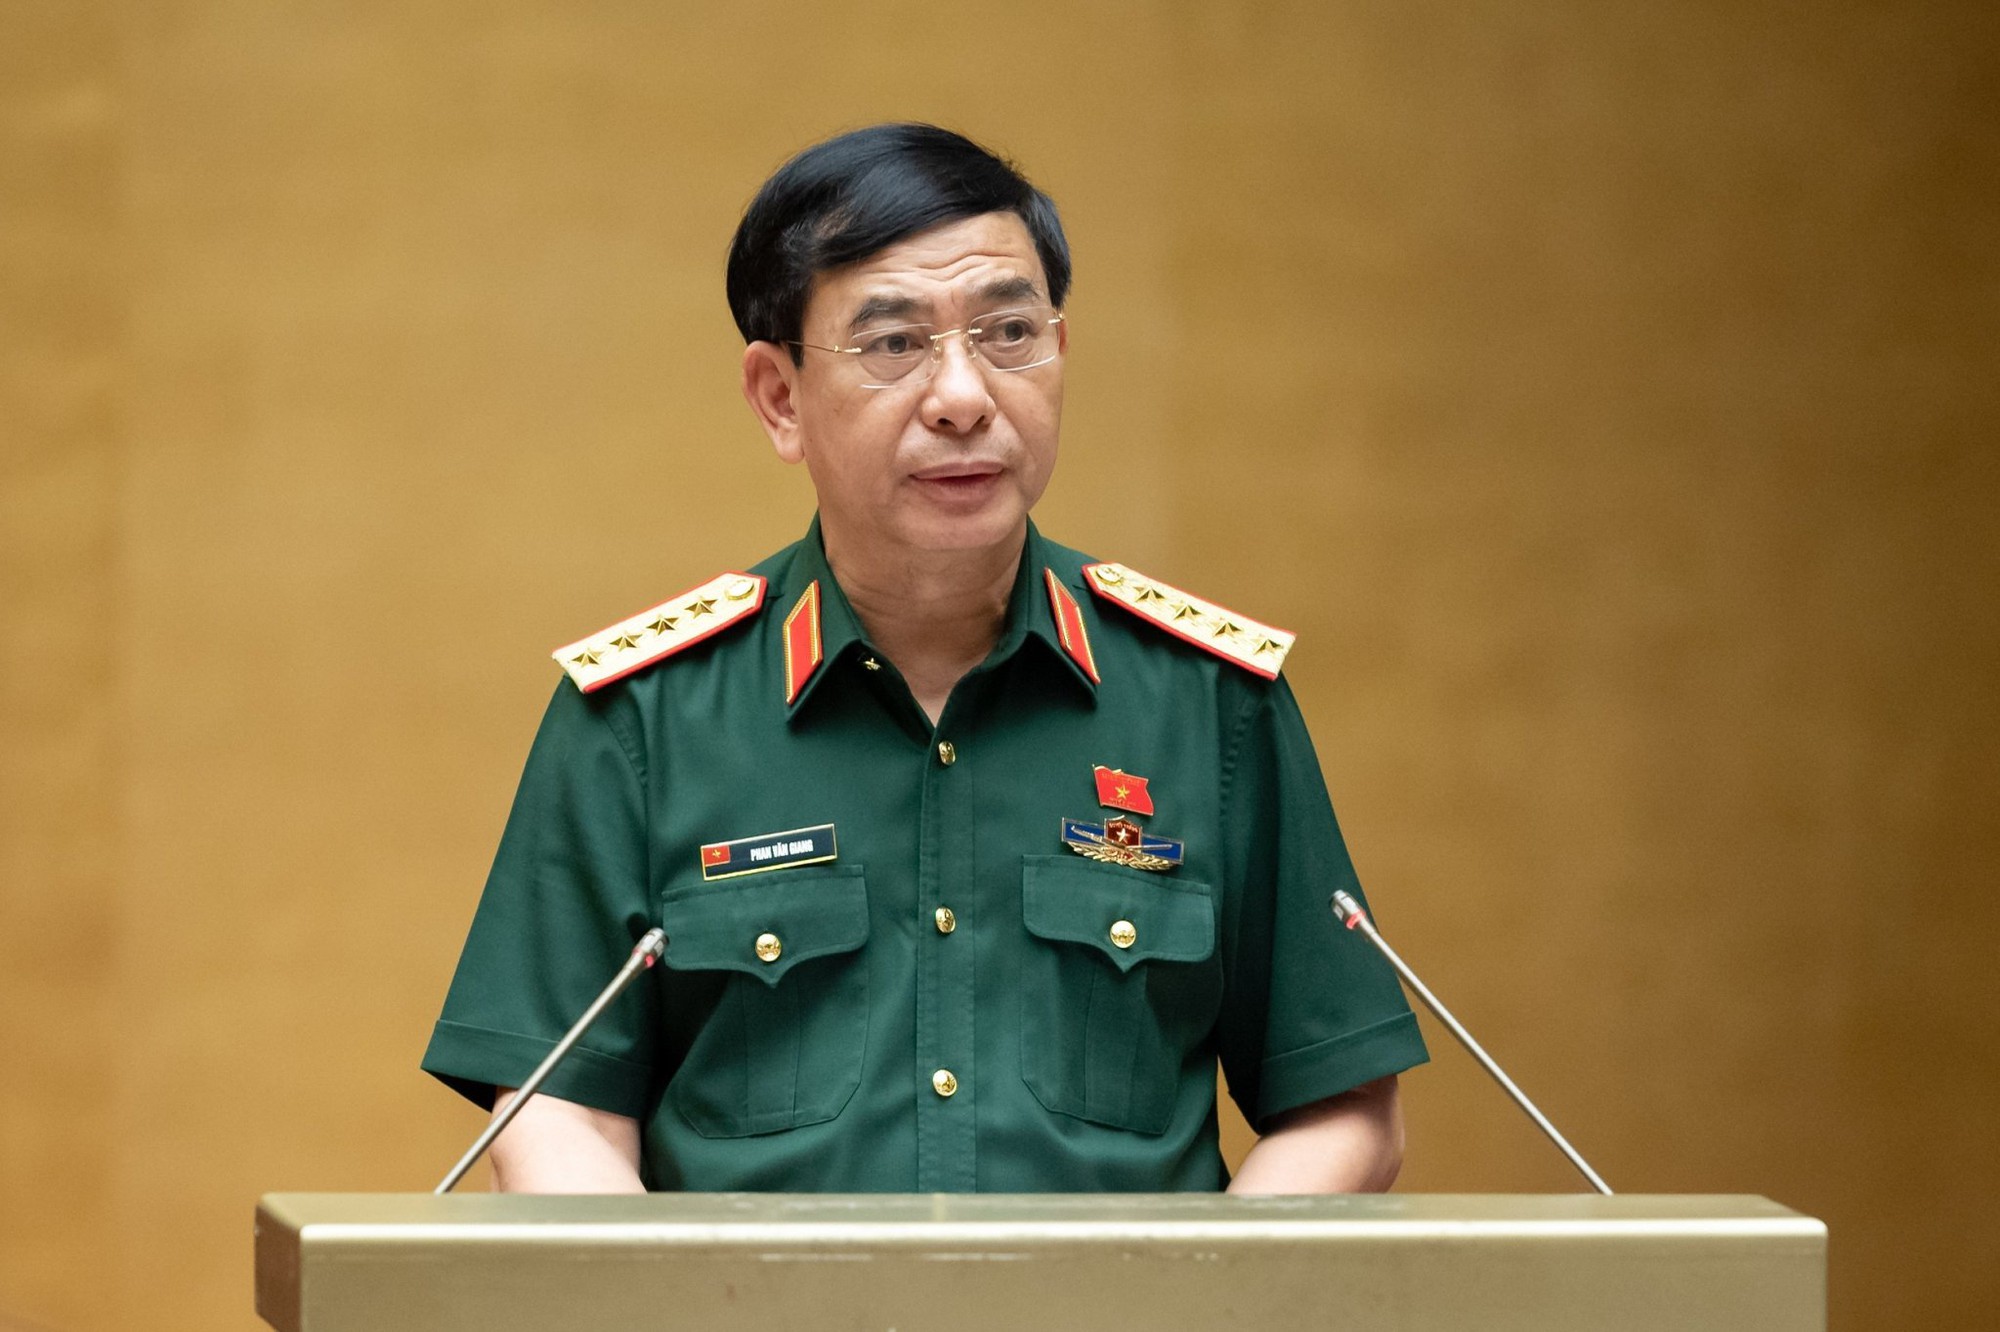 Đại tướng Phan Văn Giang: Xảy ra hiện tượng lấn chiếm, xâm canh trái phép công trình quốc phòng và khu quân sự - Ảnh 1.